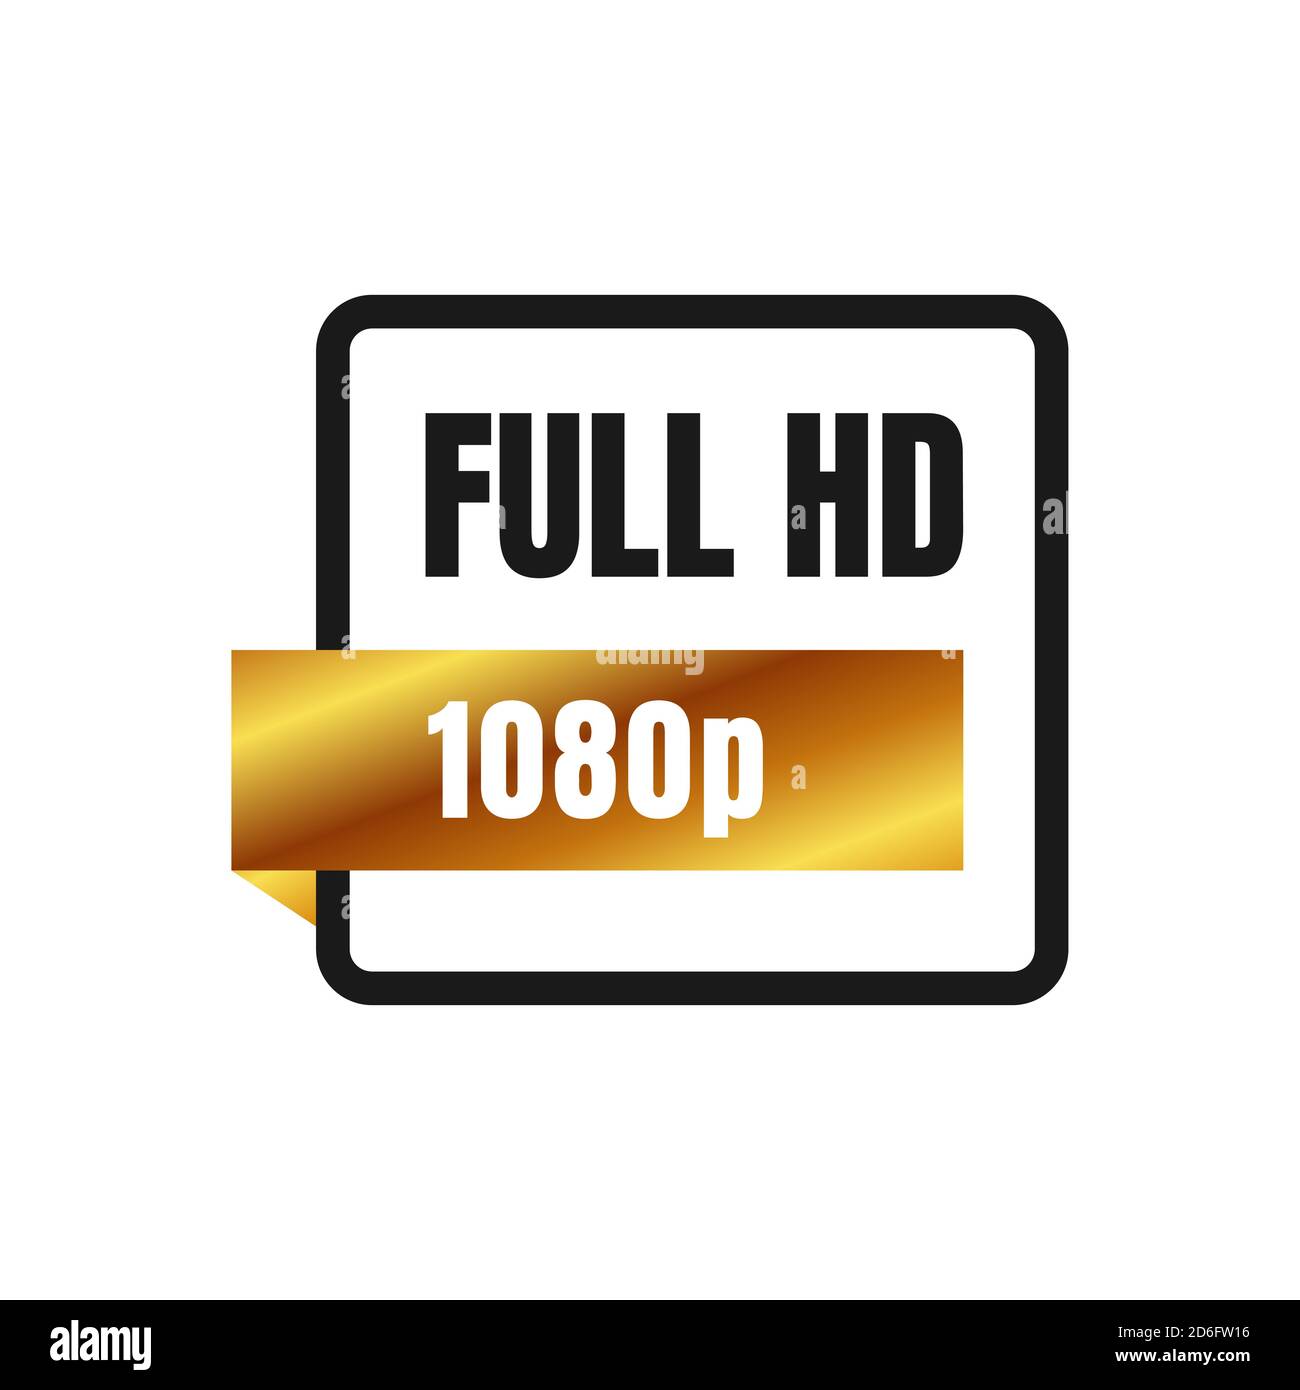 full HD logo symbol 1080p sign mark Full High definition resolution ...